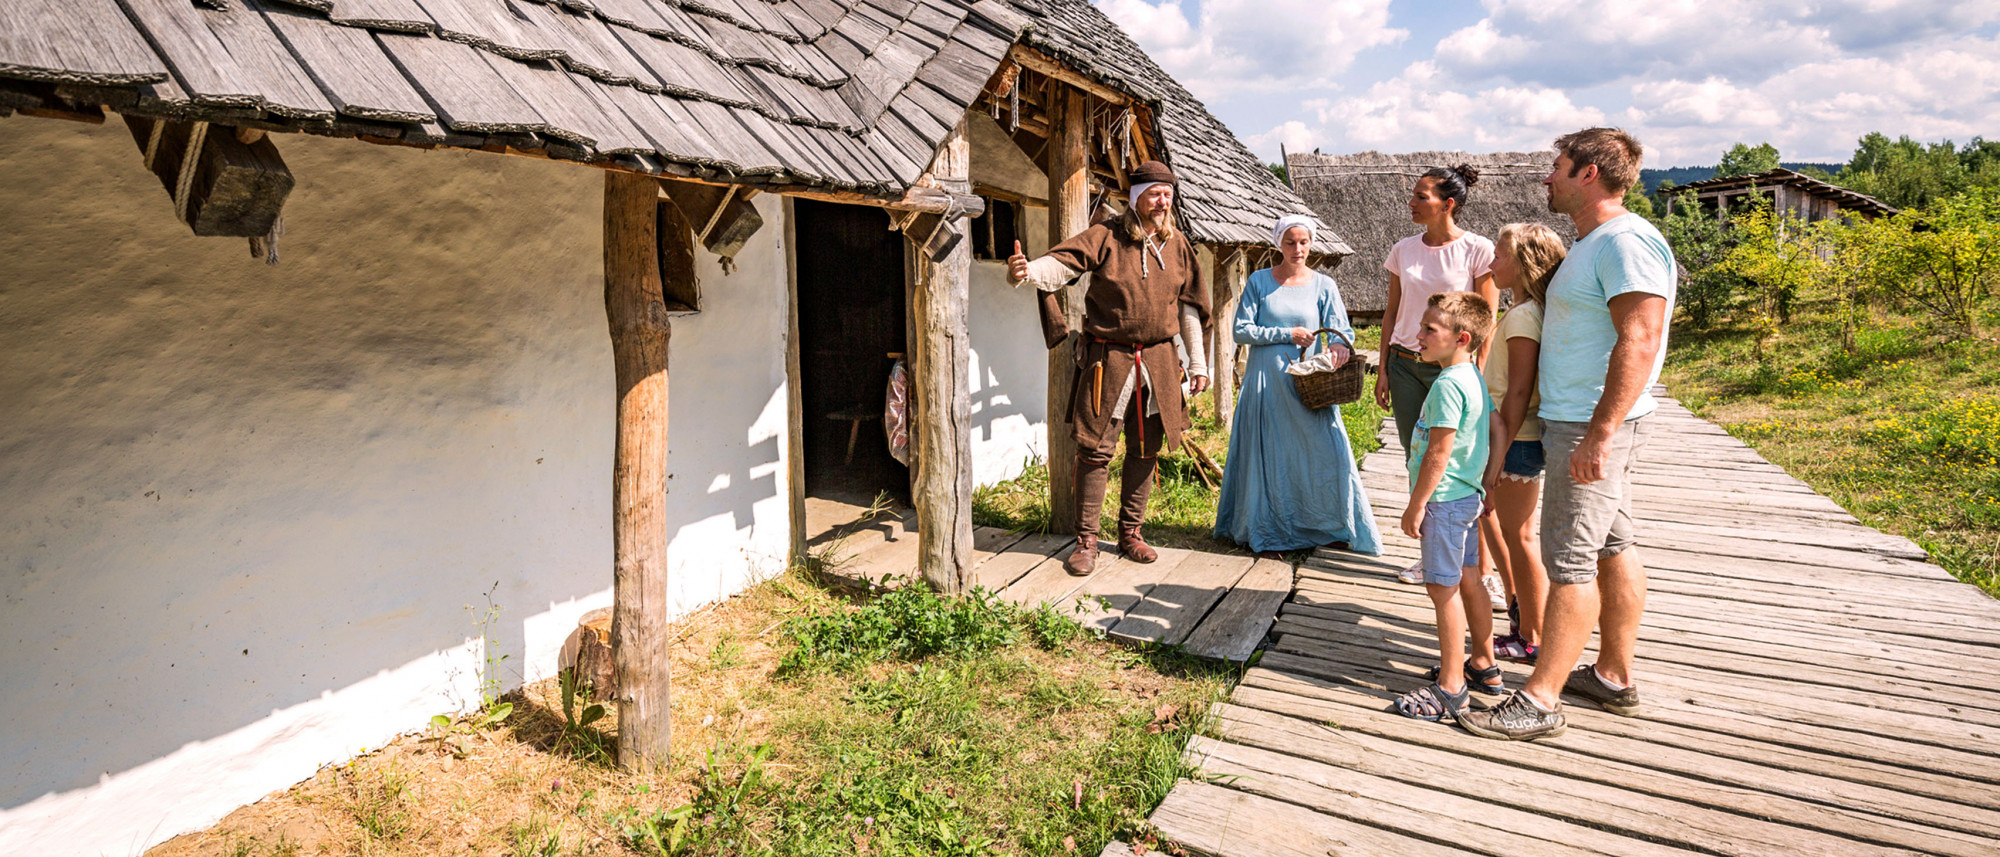 Mann und Frau in mittelalterlicher Kleidung zeigen einer Familie ein slawisches Langhaus